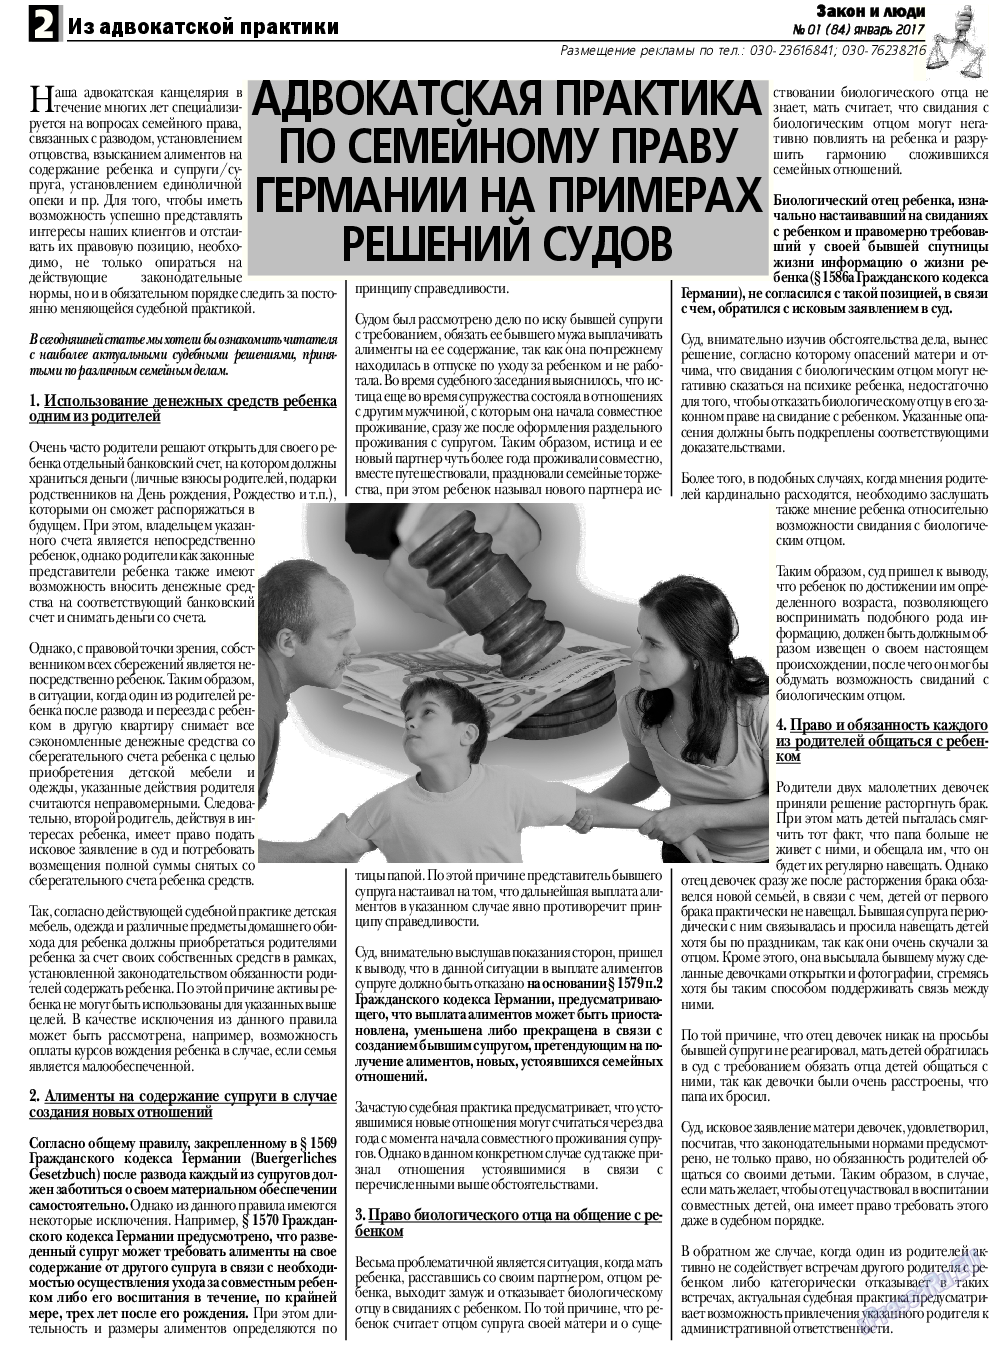 Закон и люди, газета. 2017 №1 стр.2